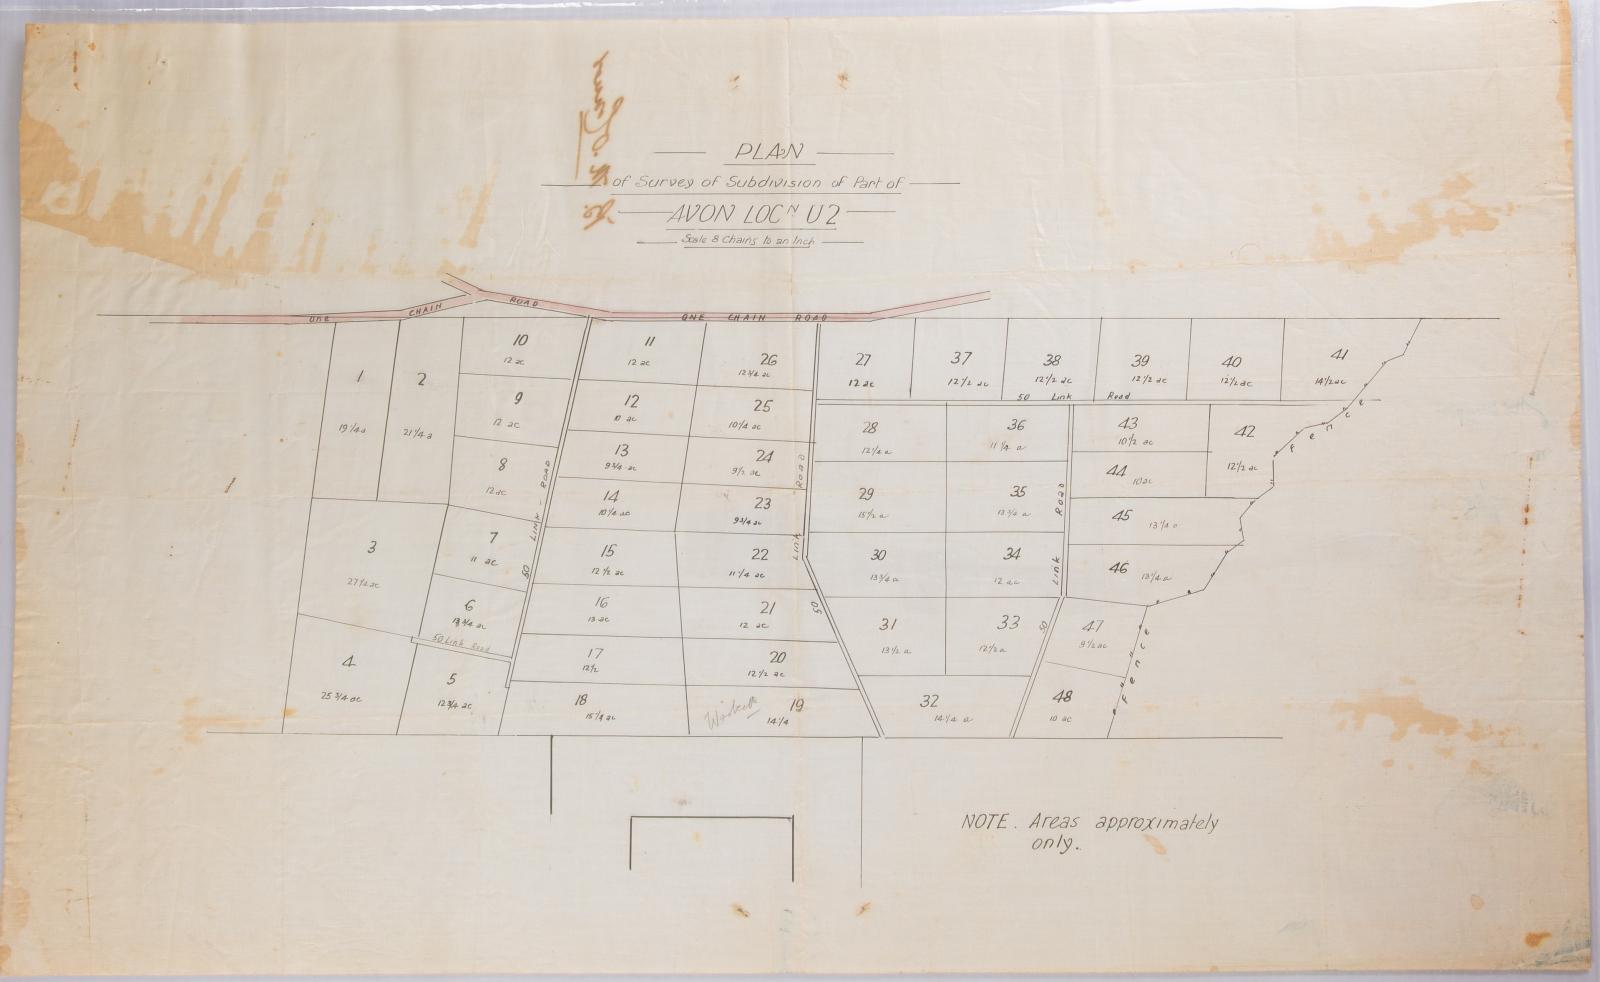 Plan subdivision Avon Location U2, 1910